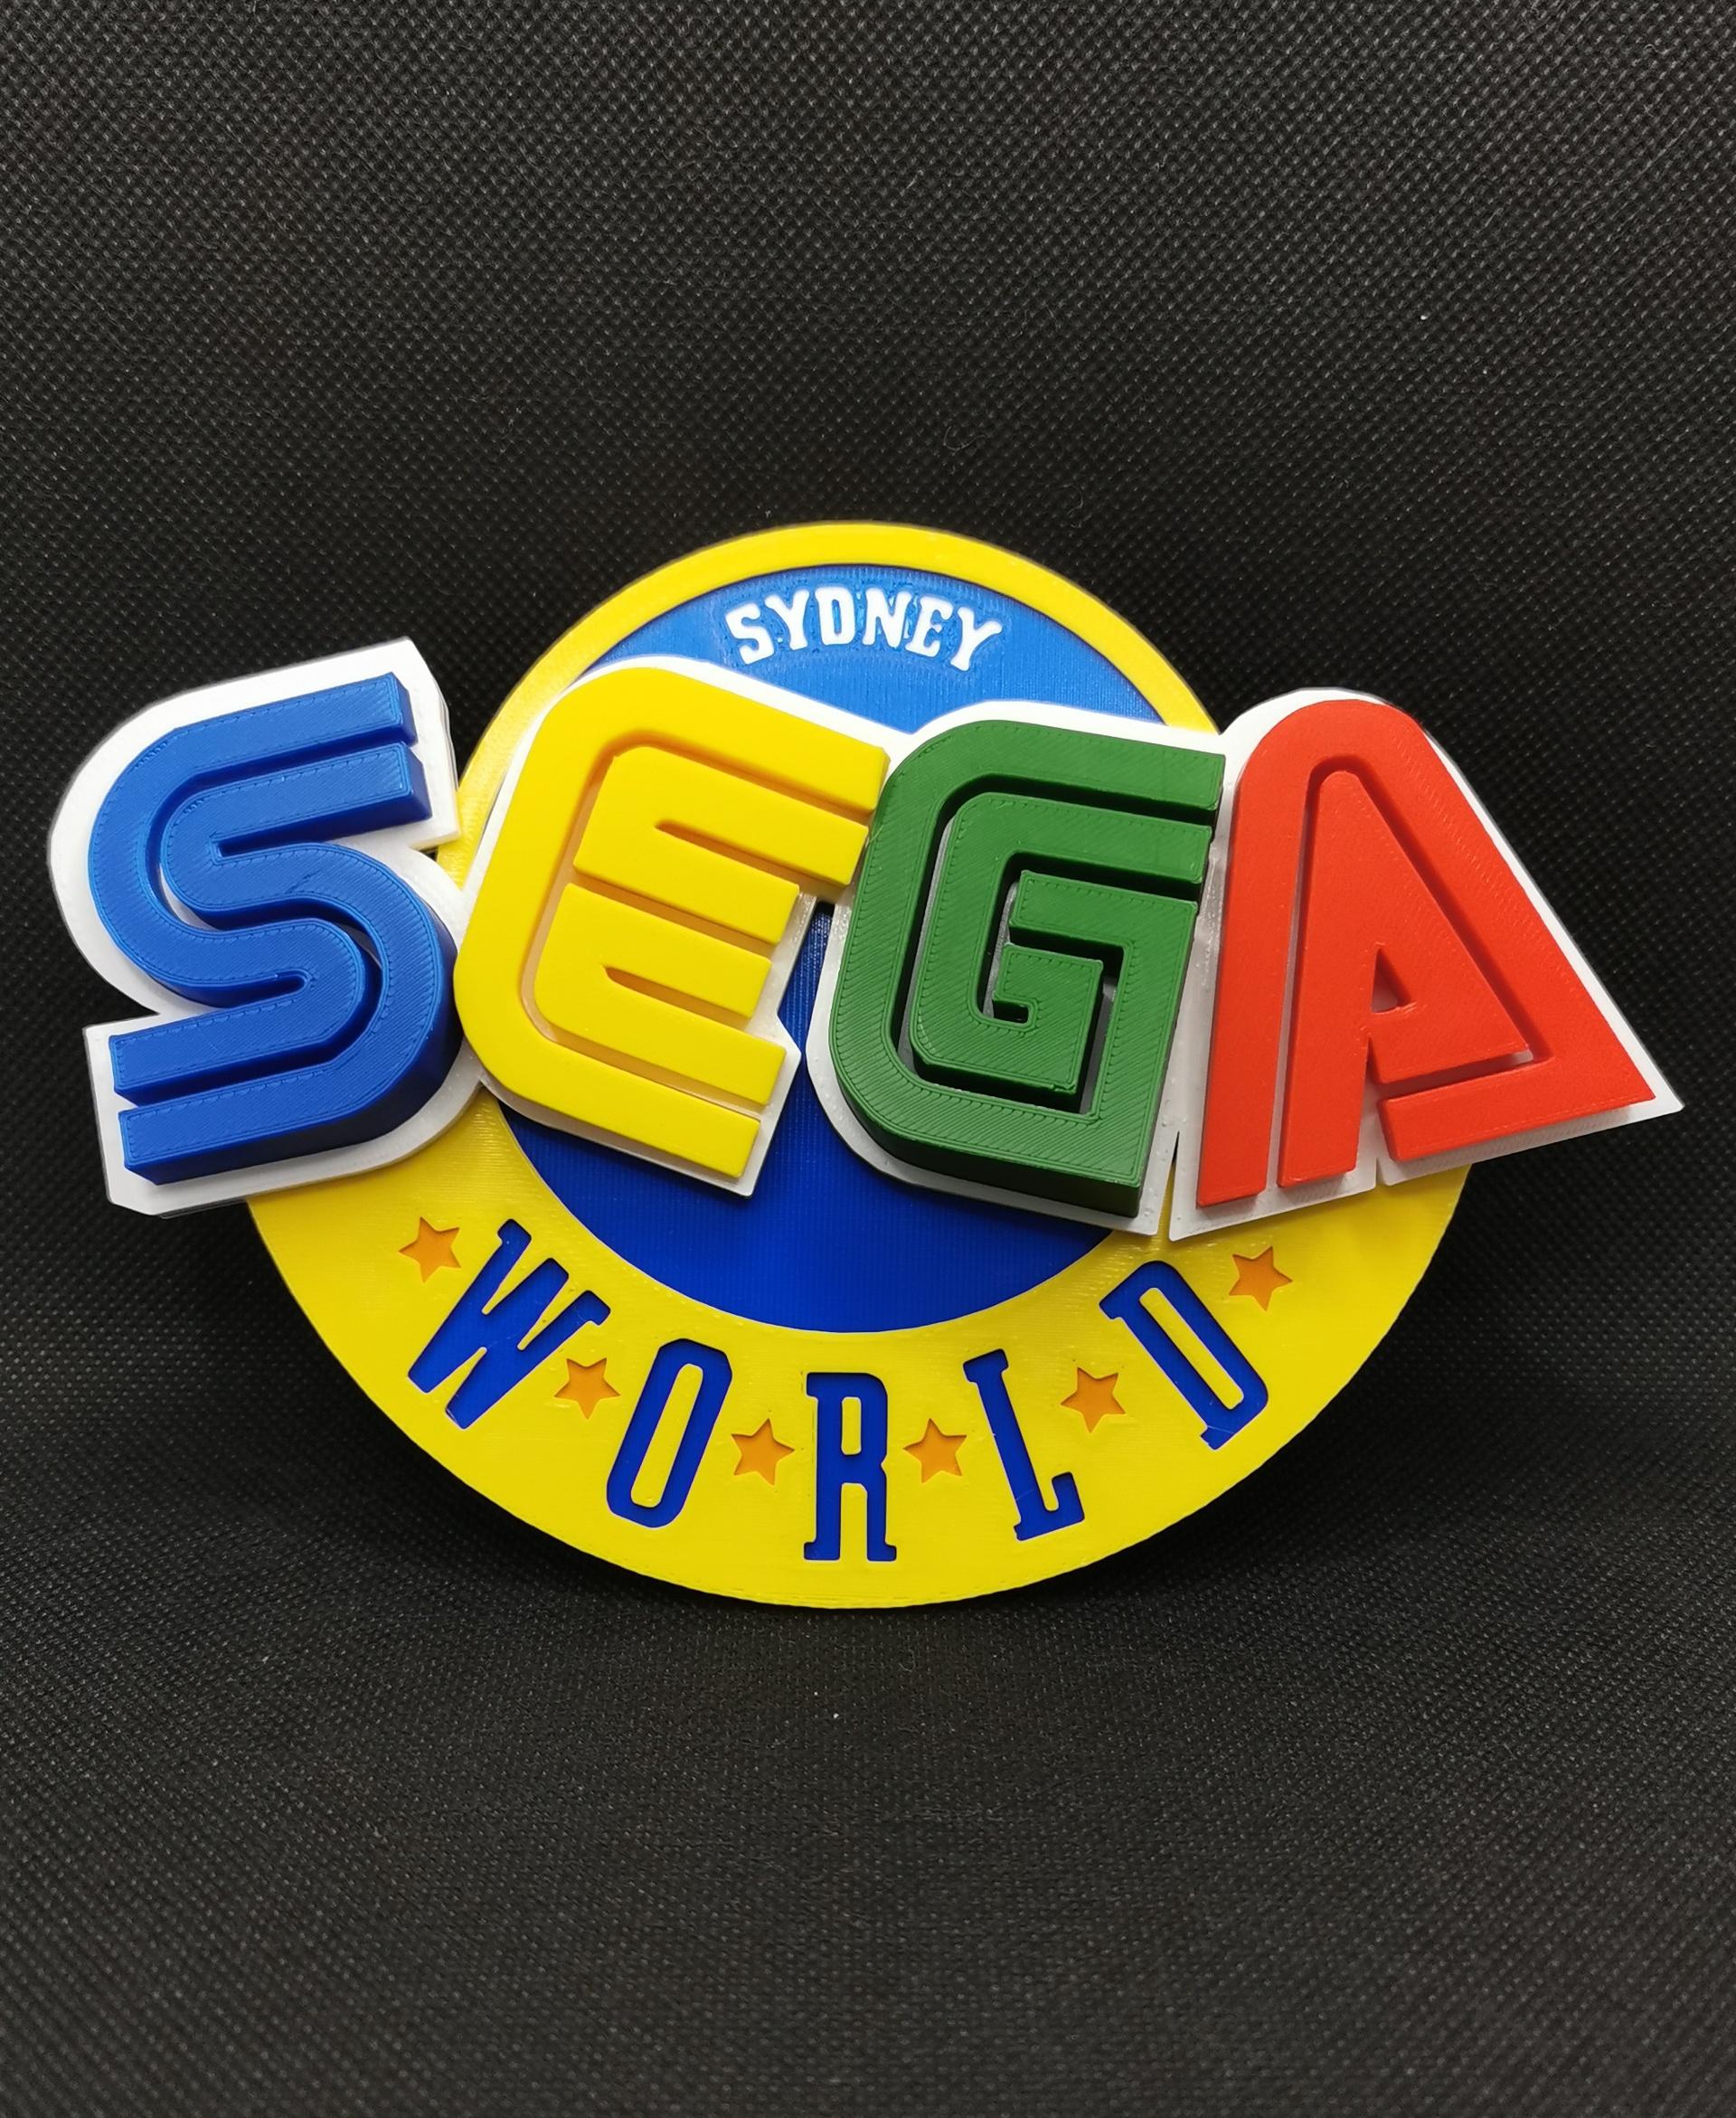 Sega World Sydney Logo 3d model